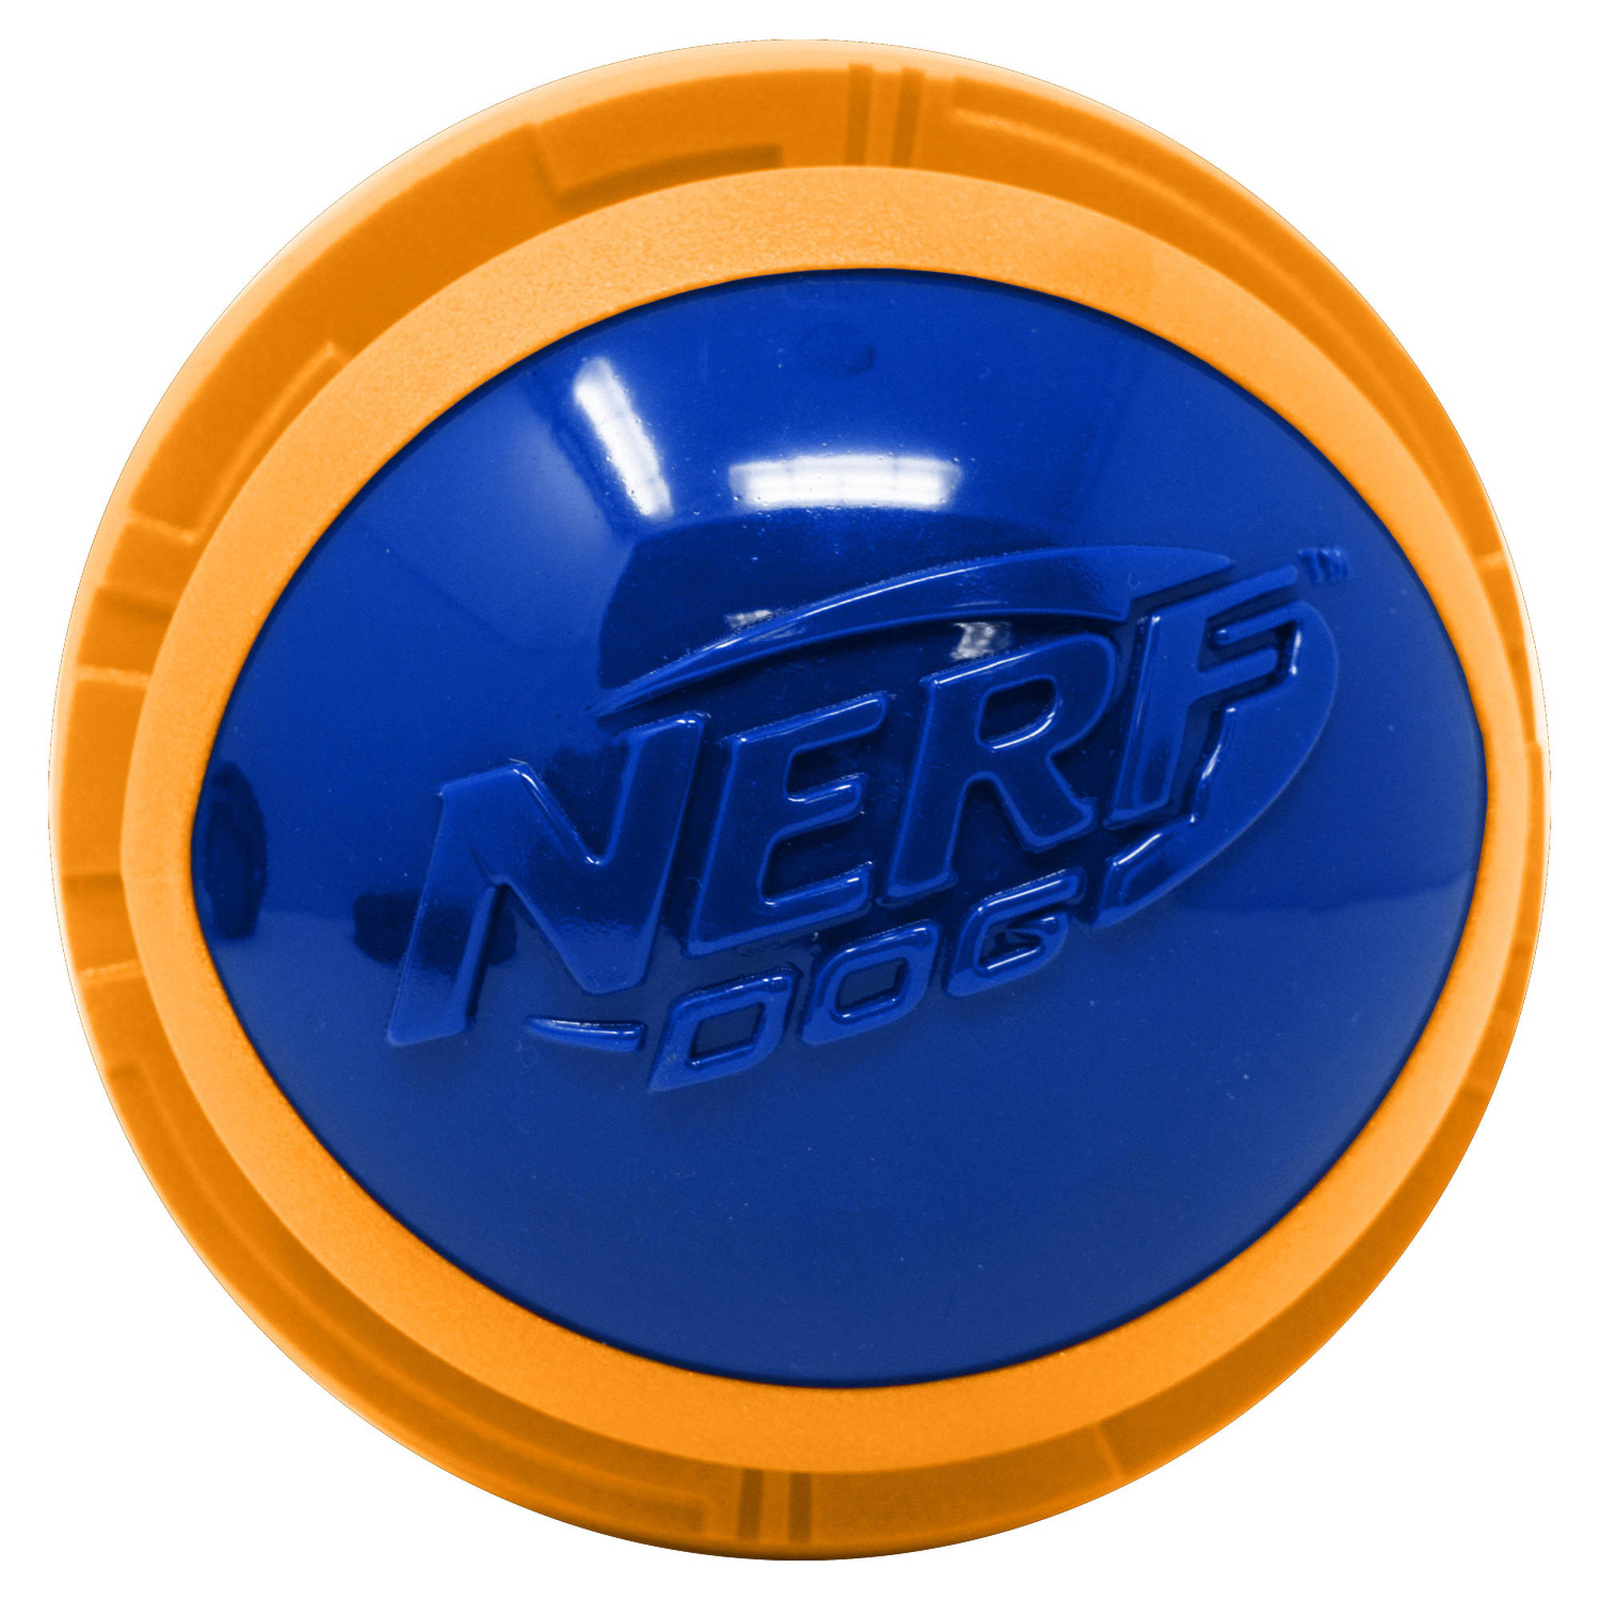 Nerf Nerf мяч из вспененной резины и термопластичной резины, 10 см (серия Мегатон), (синий/оранжевый) (380 г) nerf nerf мяч для регби из вспененной резины и нейлона 18 см серия мегатон синий оранжевый 263 г